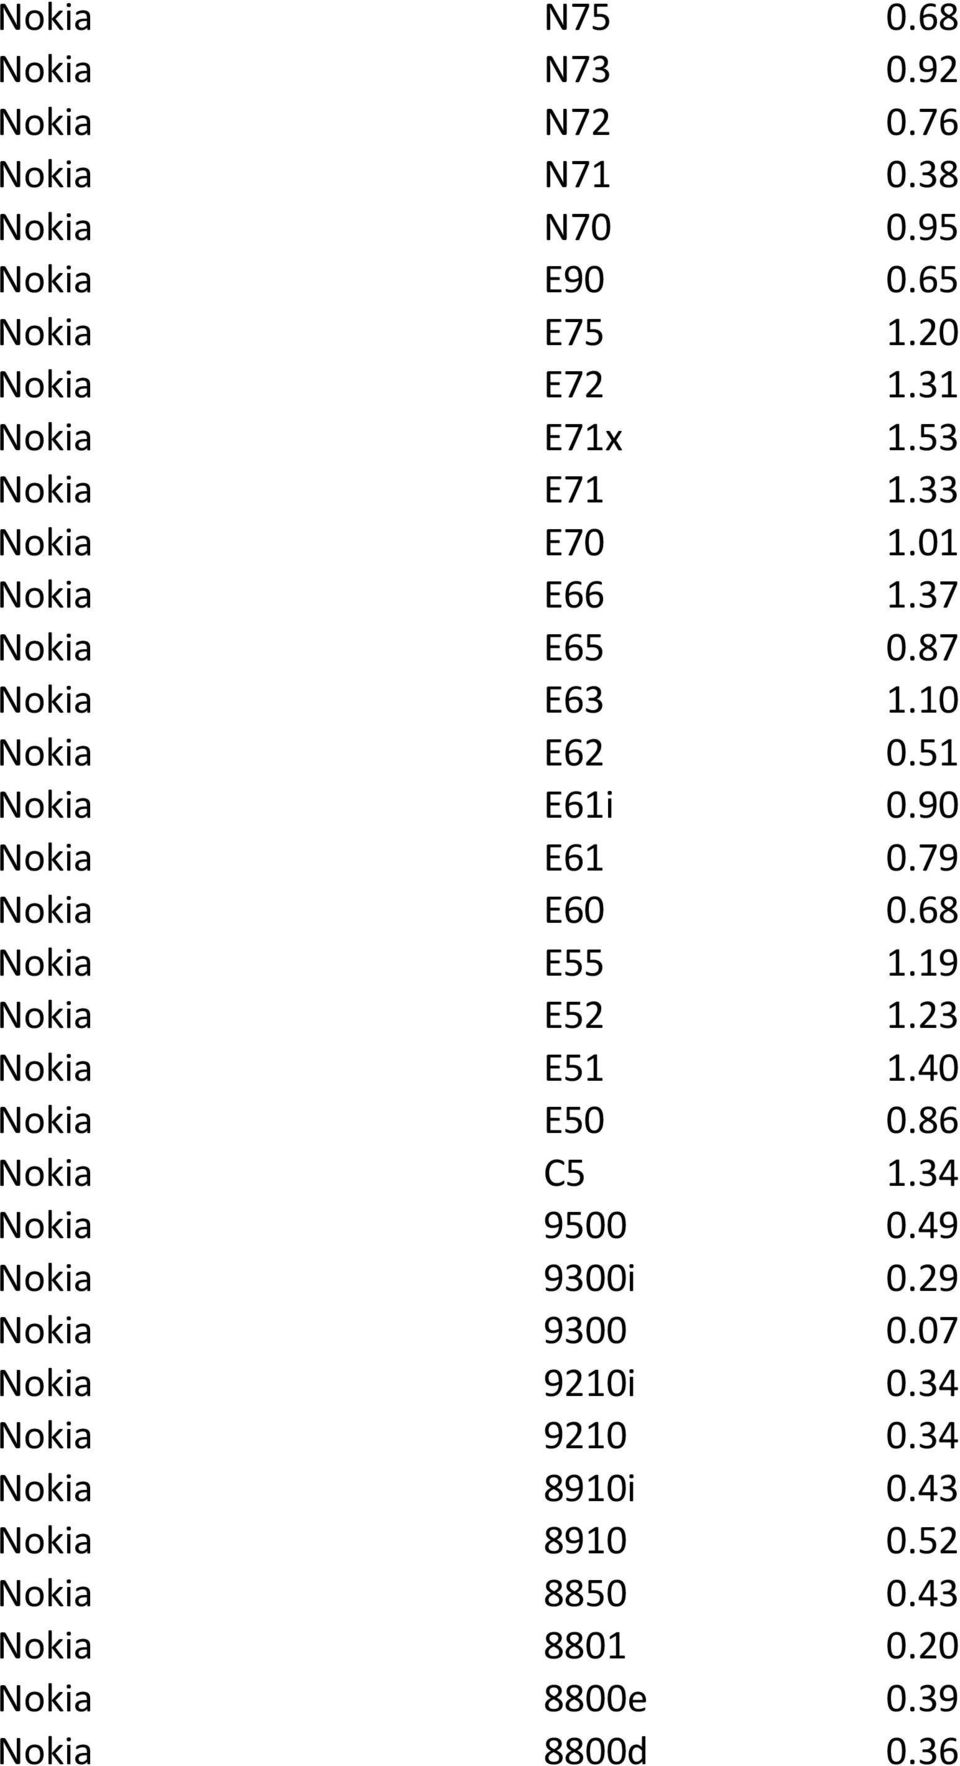 90 Nokia E61 0.79 Nokia E60 0.68 Nokia E55 1.19 Nokia E52 1.23 Nokia E51 1.40 Nokia E50 0.86 Nokia C5 1.34 Nokia 9500 0.